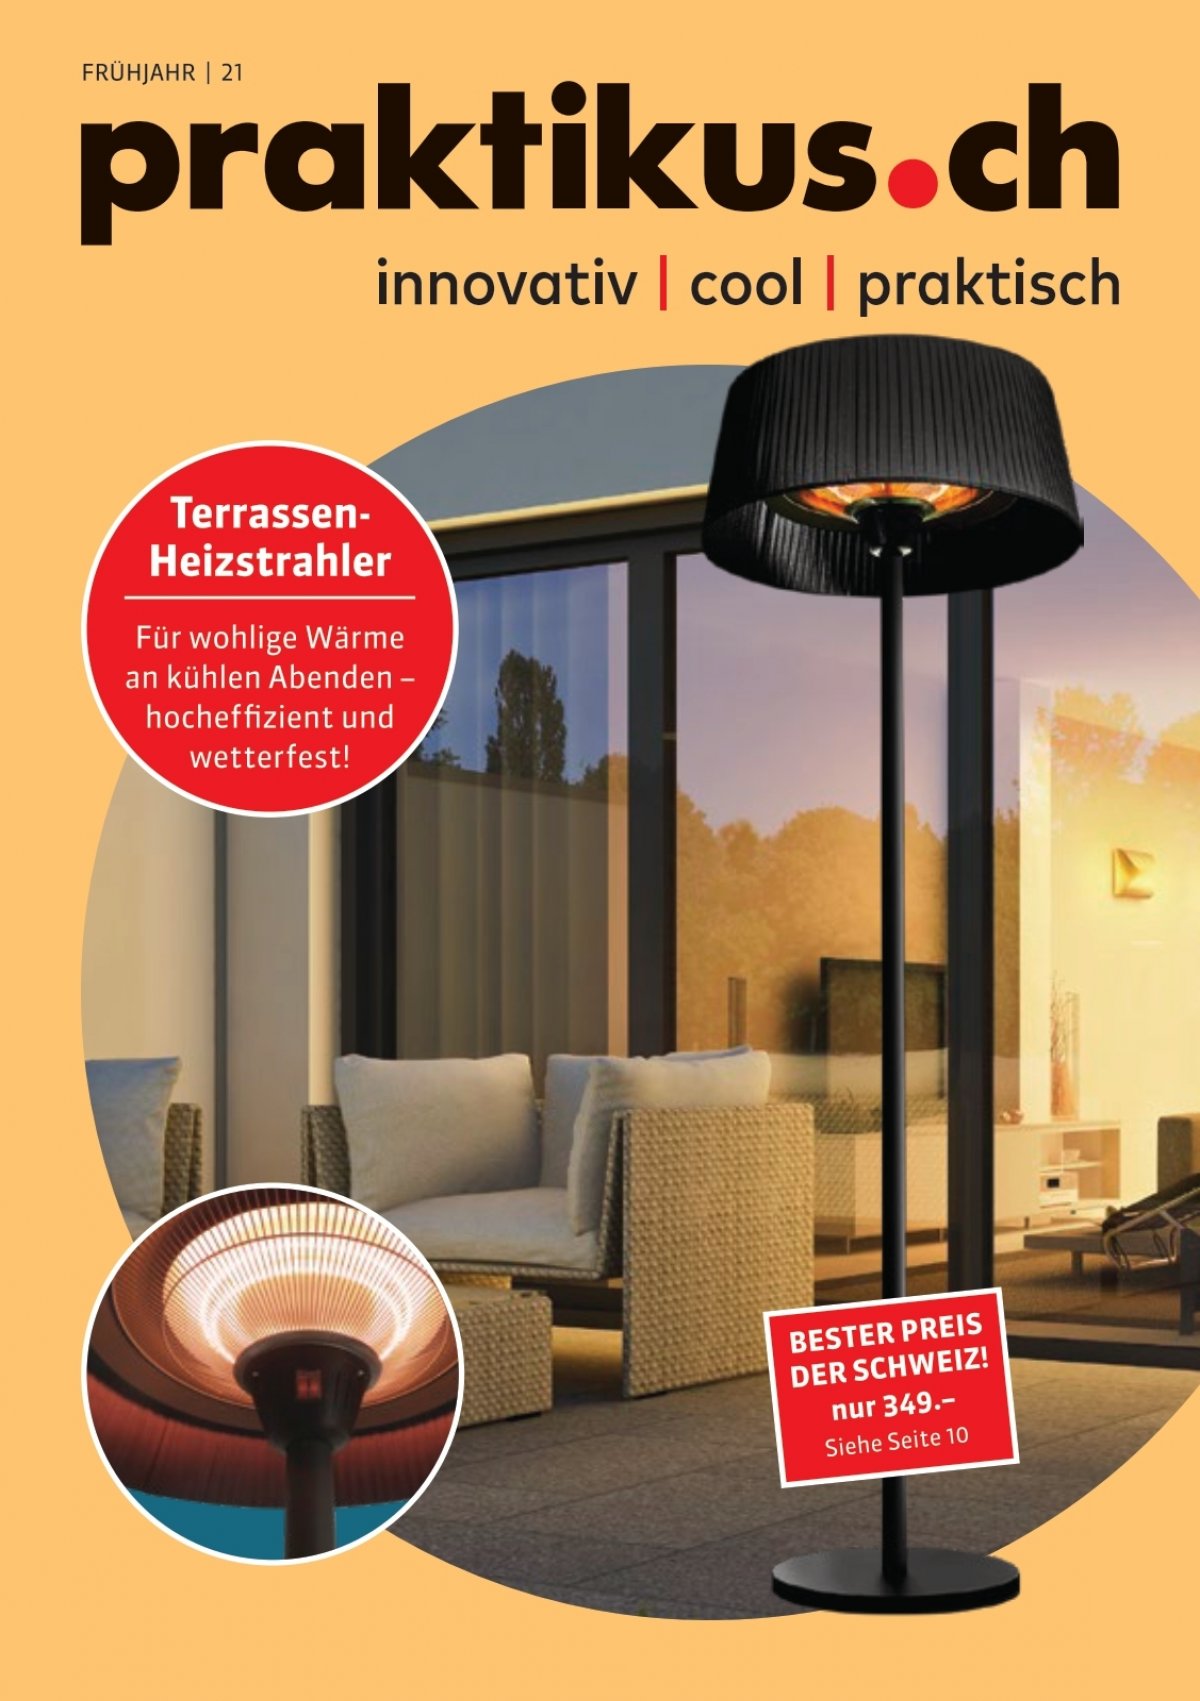 Infratrot Sitzheizung Bottom Heater online kaufen bei PrimeSolar